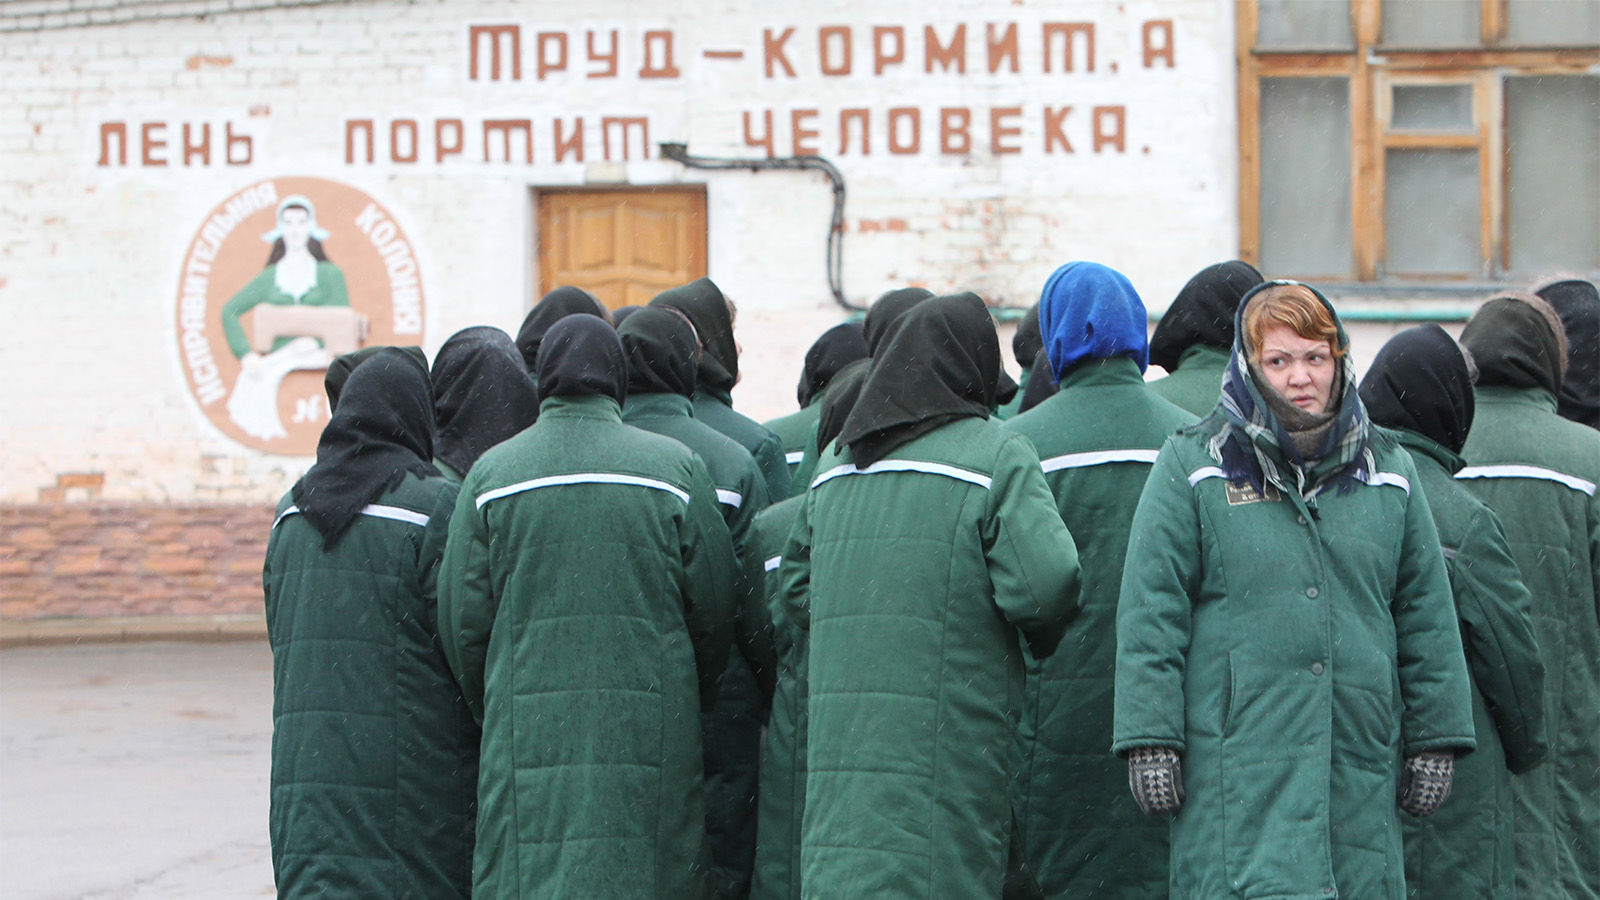 ​Кремль начал вербовать в тюрьмах женщин: известно, на какие должности их берут, – NYT